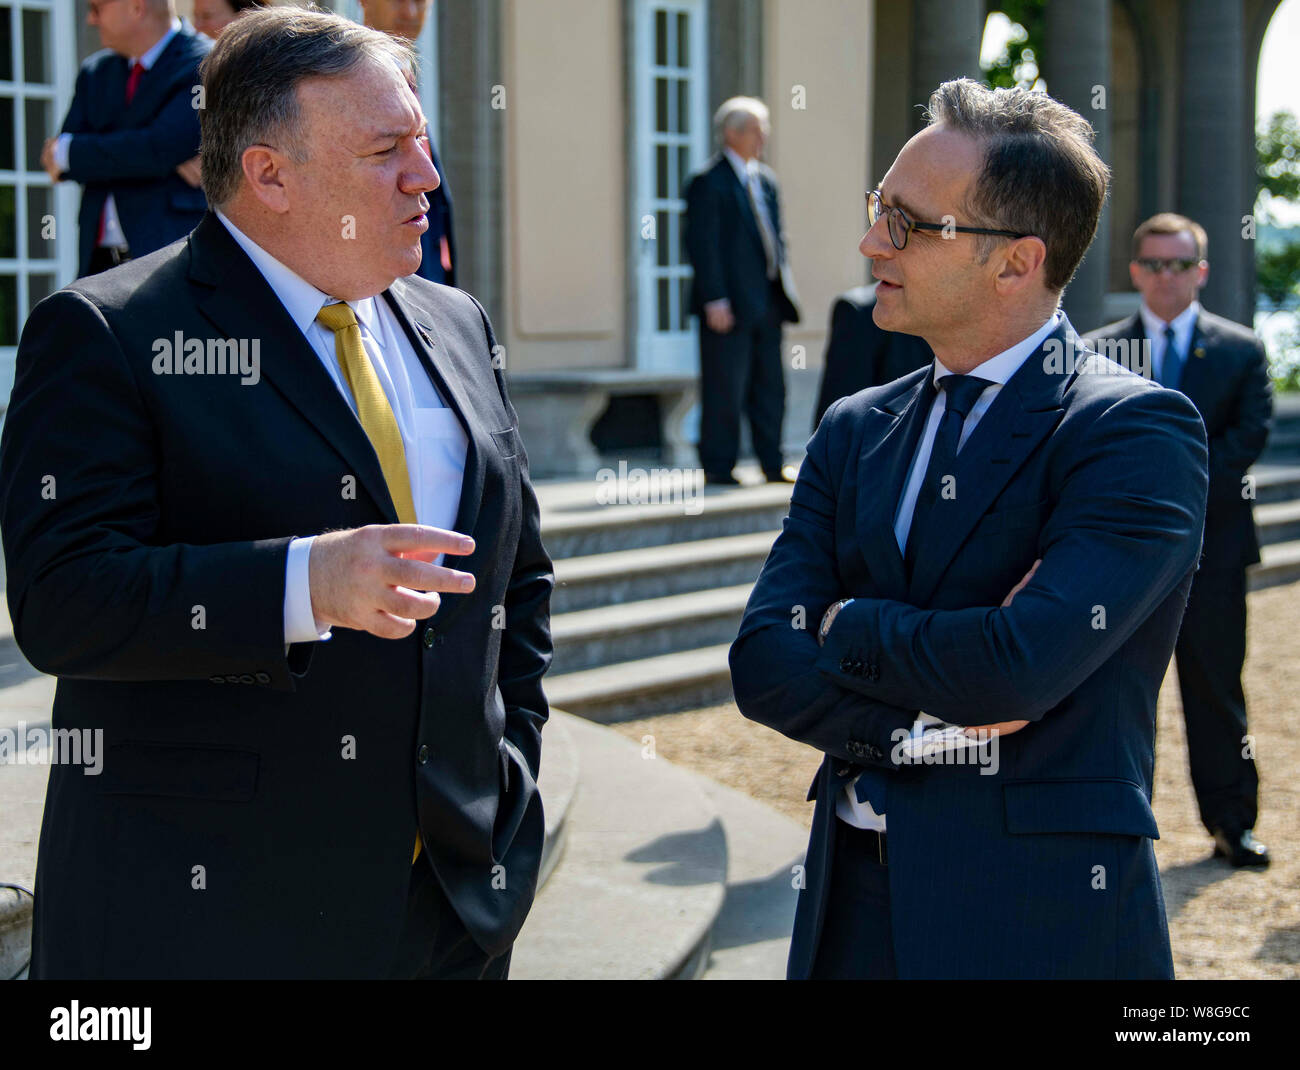 El Secretario de Estado de Estados Unidos, Michael R. Pompeo se reúne con el Ministro de Asuntos Exteriores alemán Heiko Maas en Berlín, Alemania, el 31 de mayo de 2019. Foto de stock